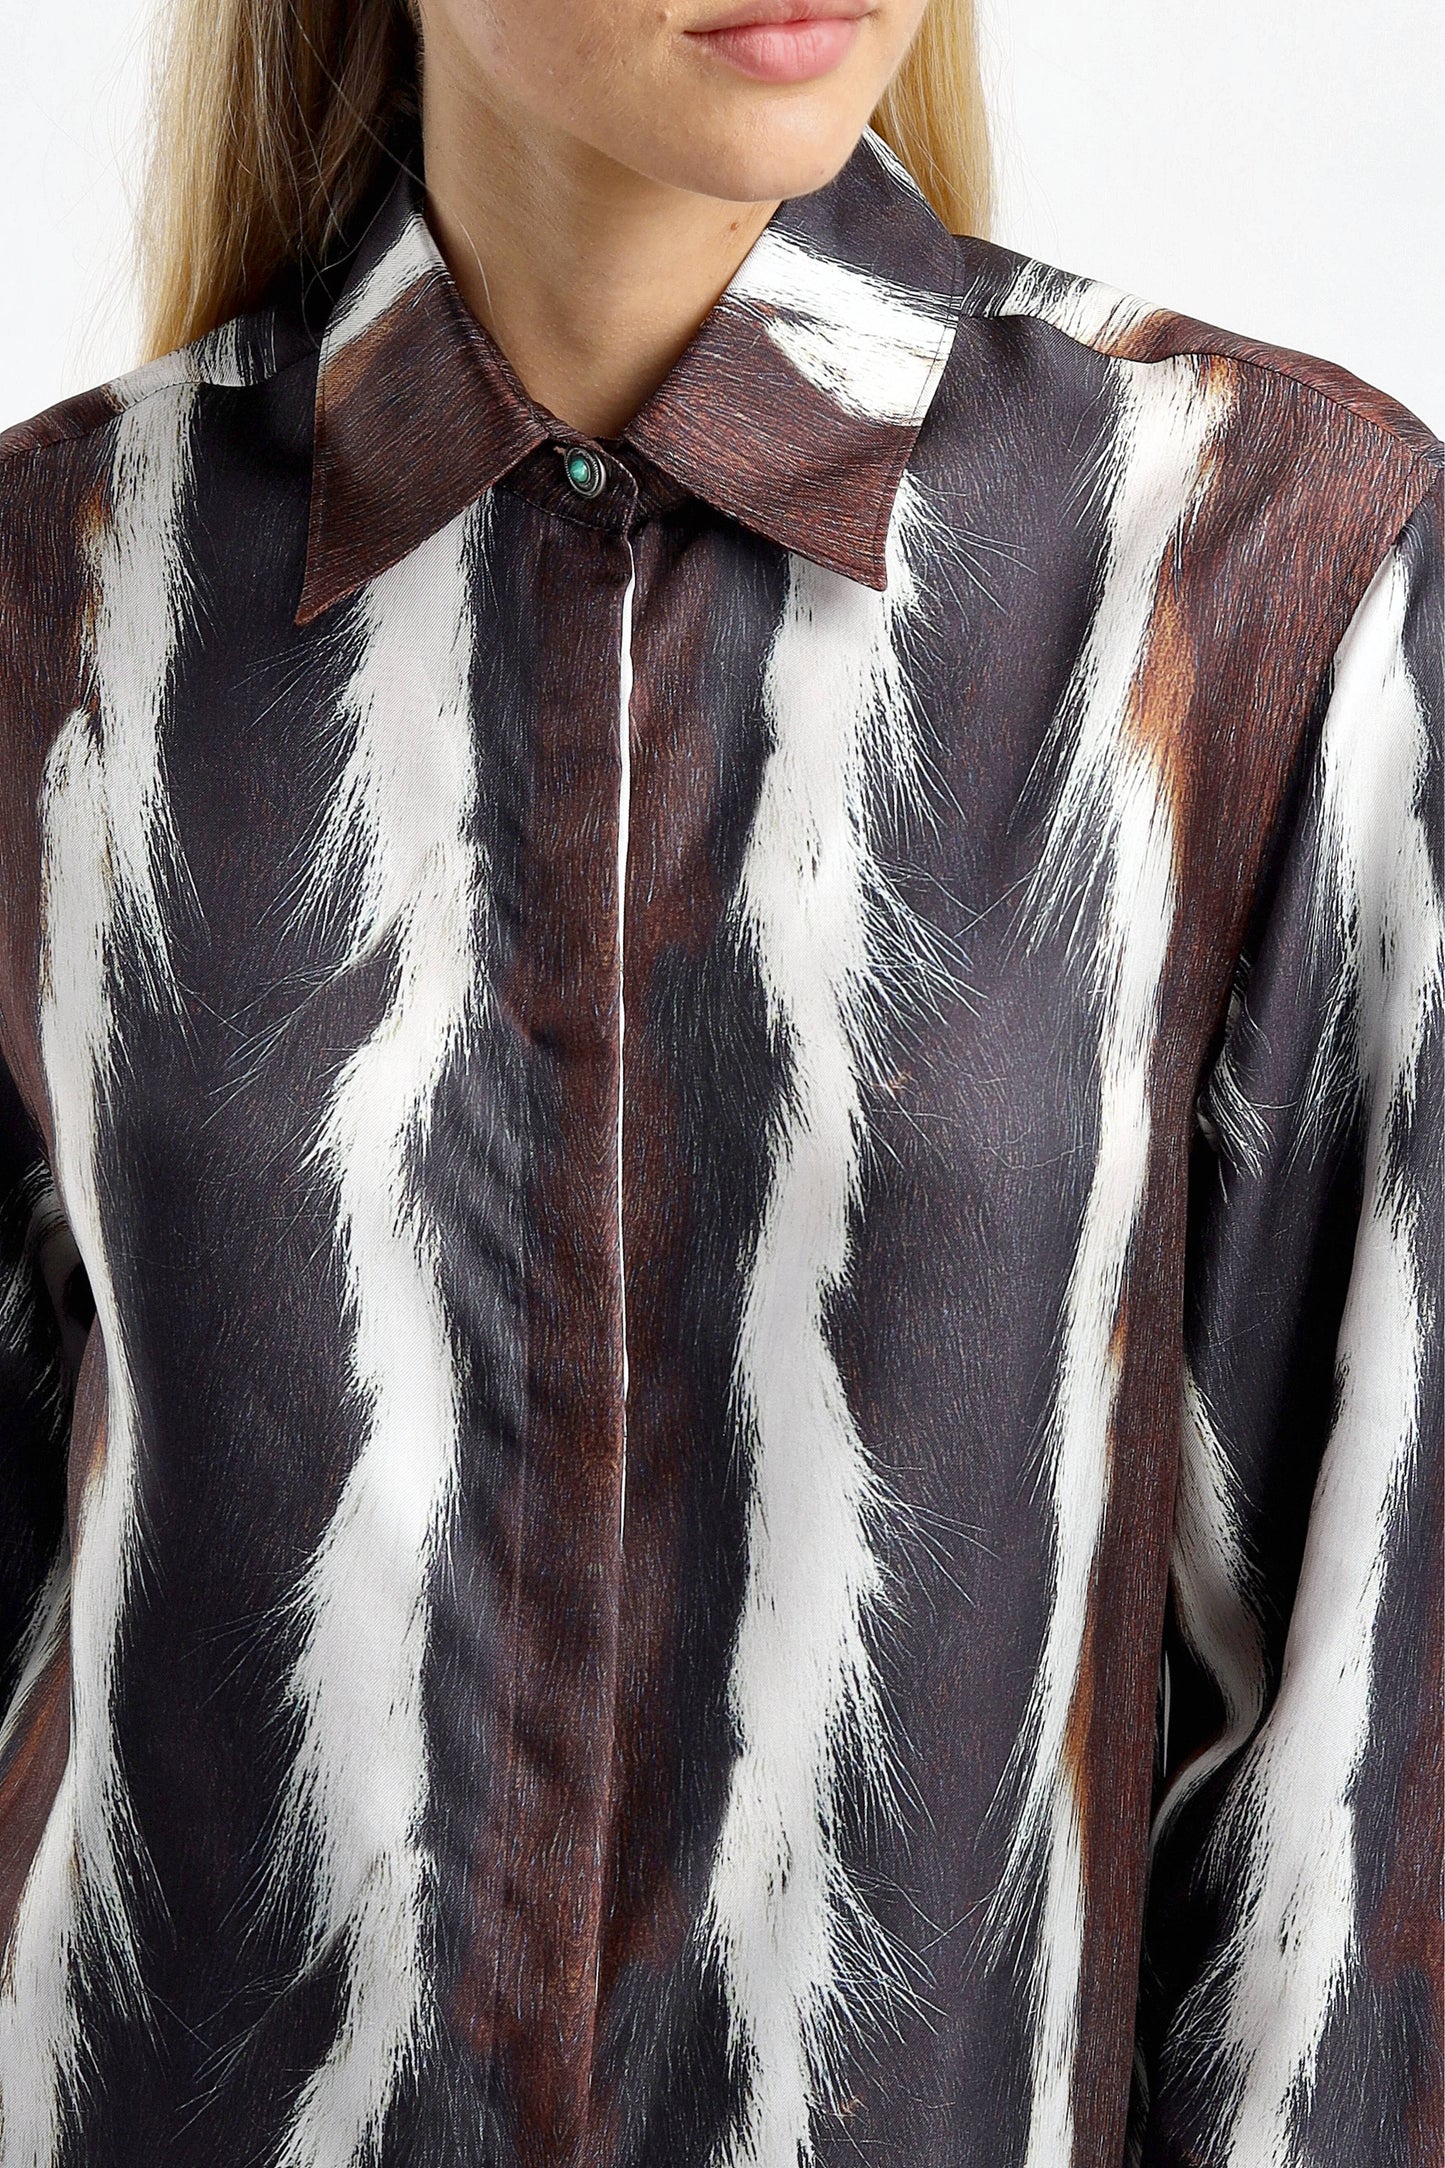 Bluse Stripes in MulticolorRoberto Cavalli - Anita Hass